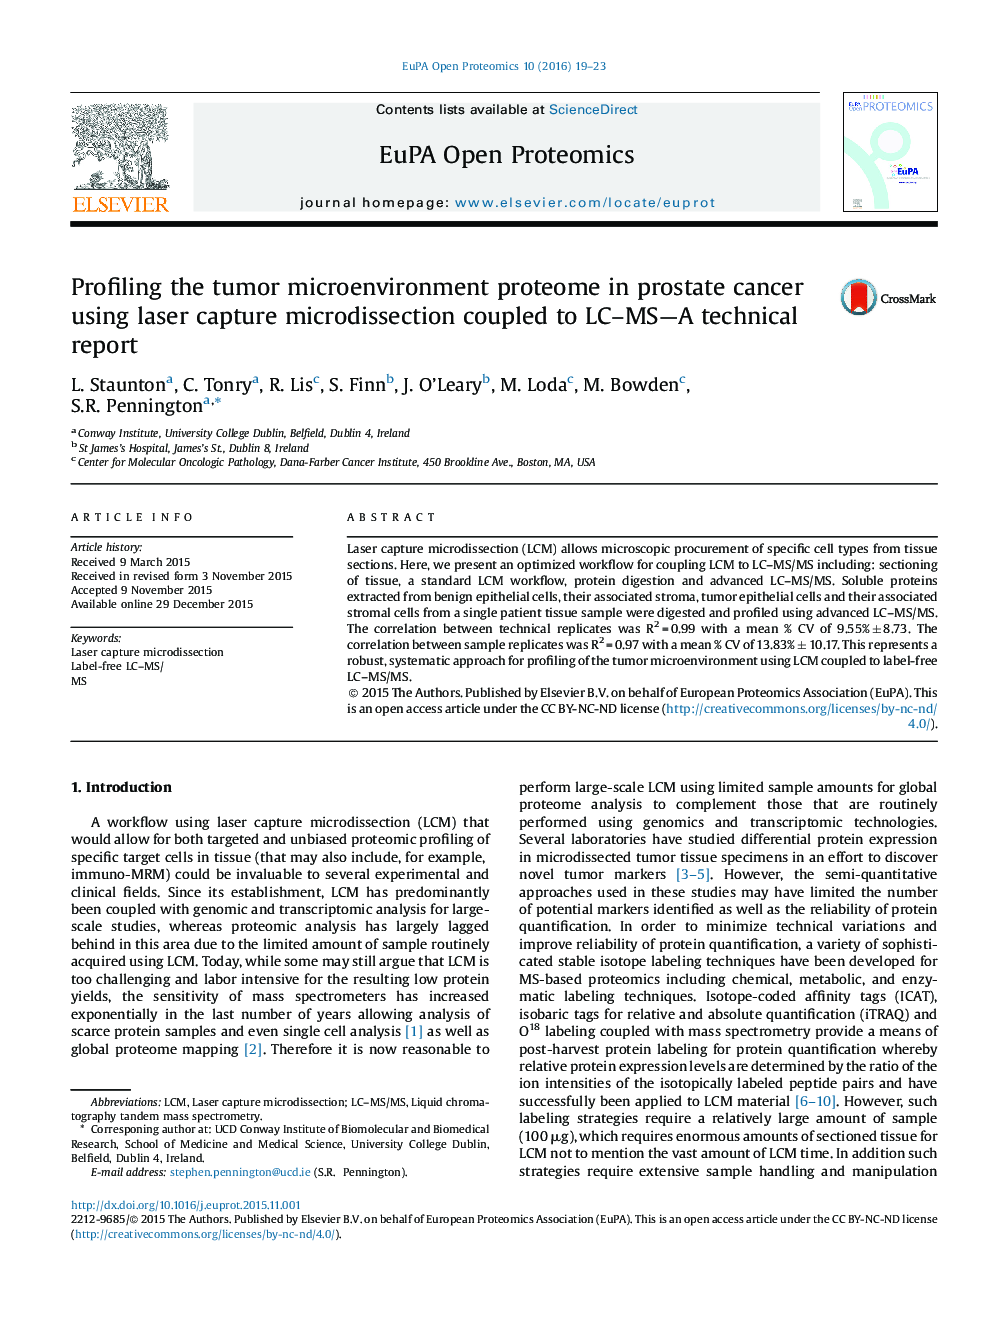 پروفایل بندی پروتئوم میکرومحیط تومور در سرطان پروستات با استفاده از میکرودیسکسیون ضبط لیزر همراه با LC-MS-A؛ گزارش فنی